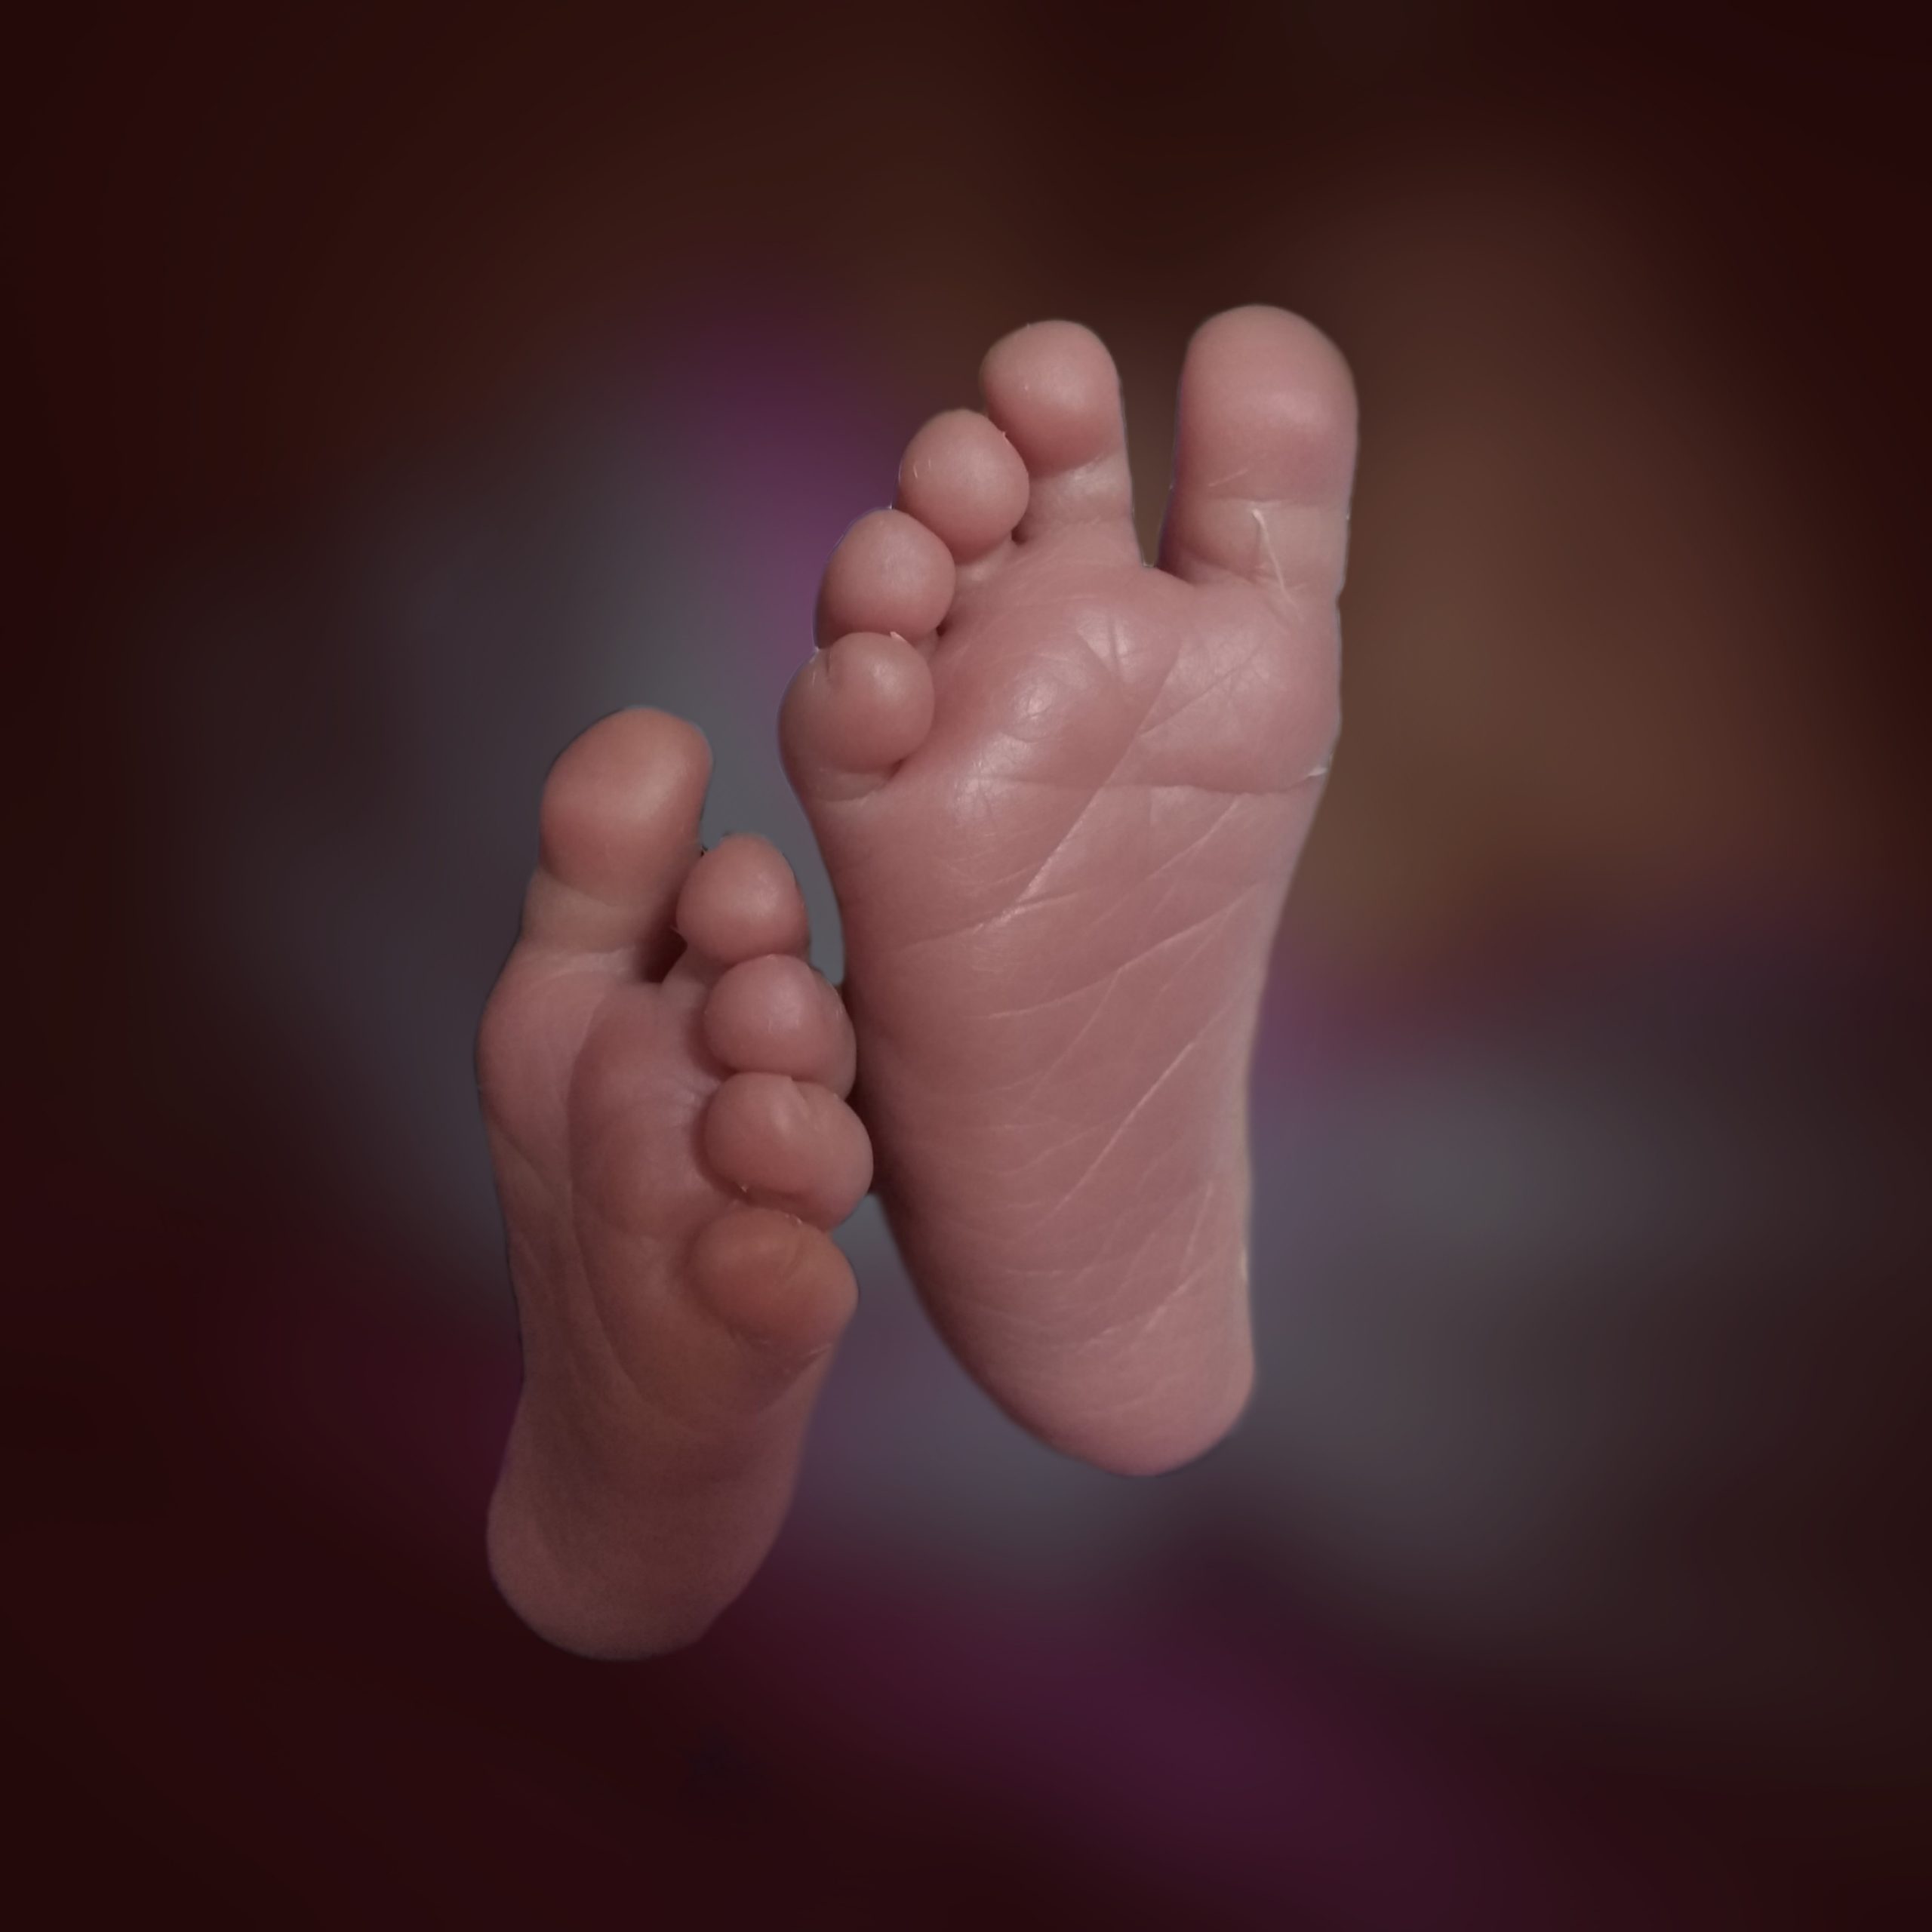 Newborn's feet